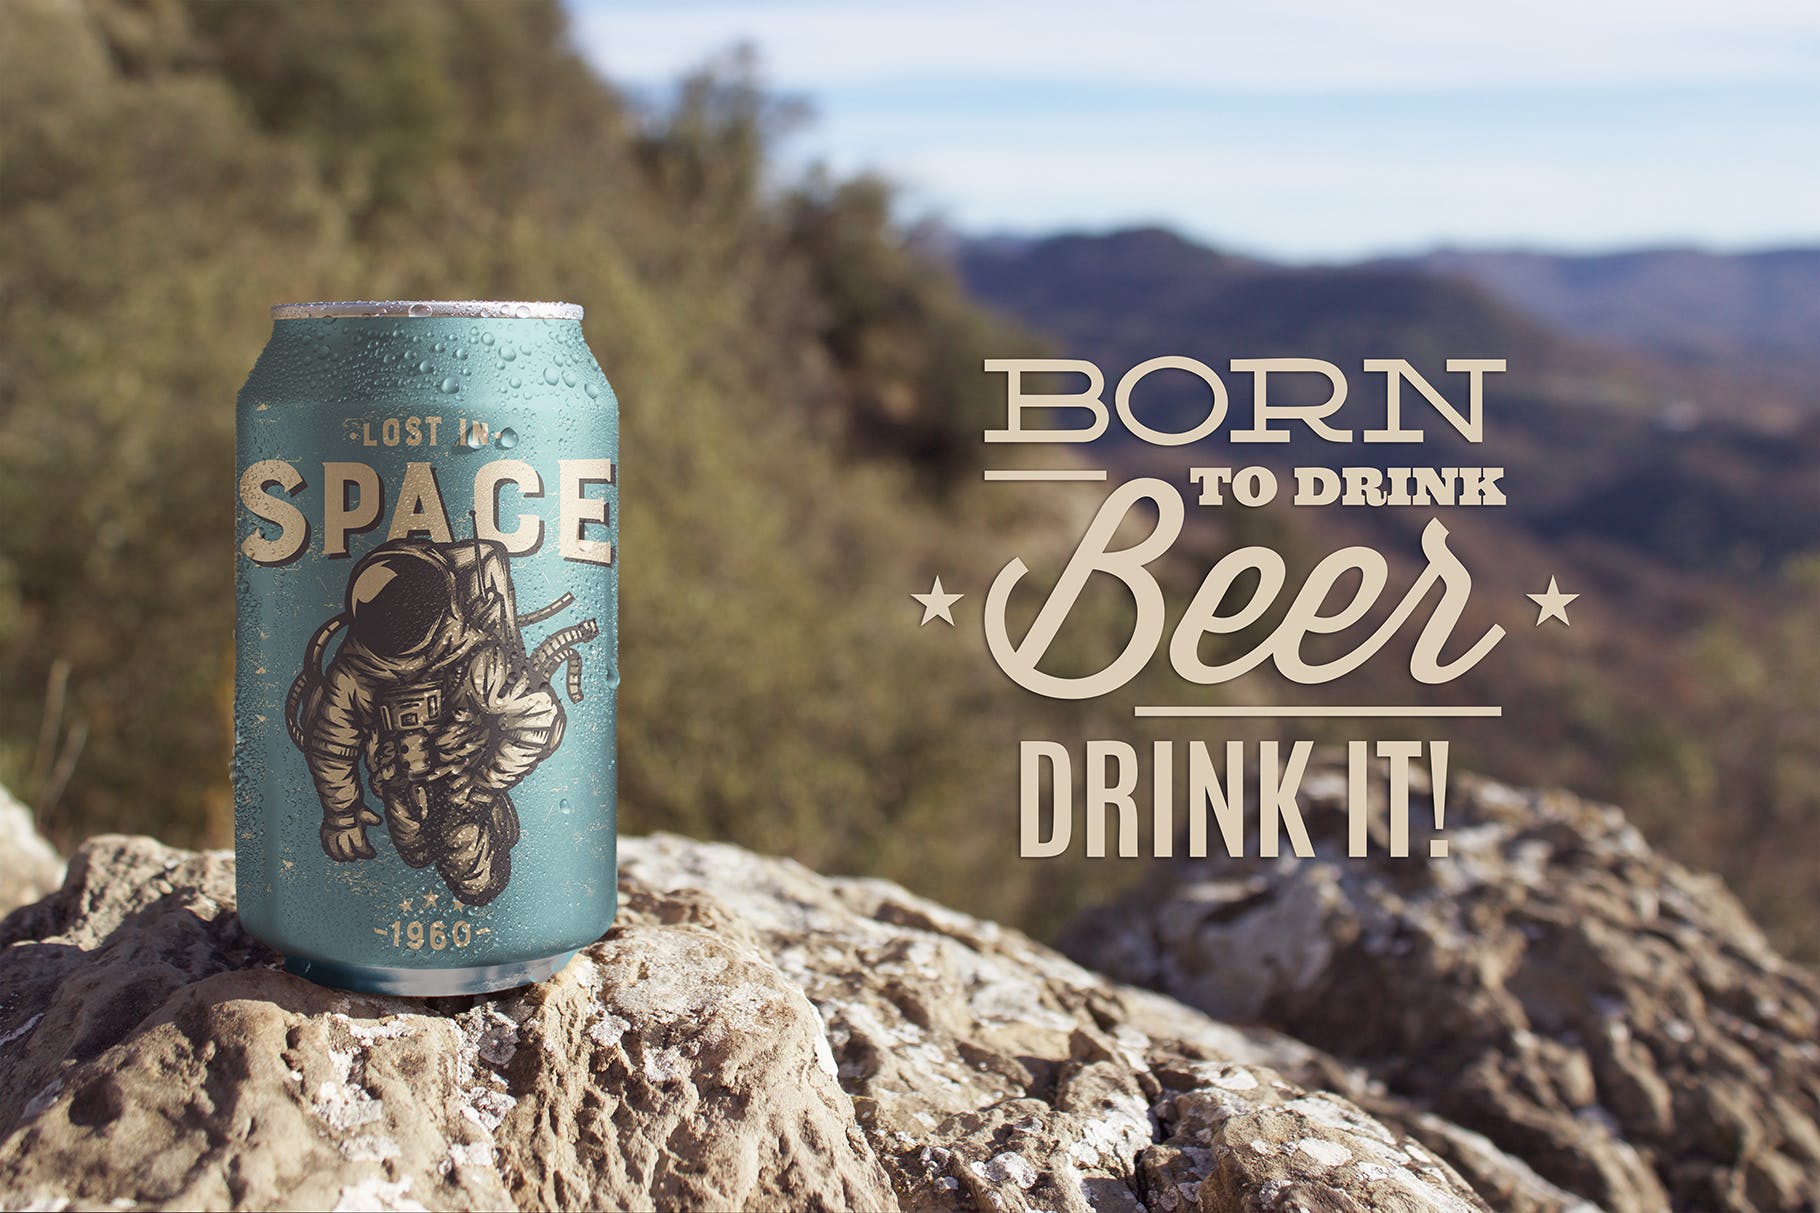 野外岩石场景啤酒易拉罐设计效果图第一素材精选 Nature Beer Can Mockup插图(1)